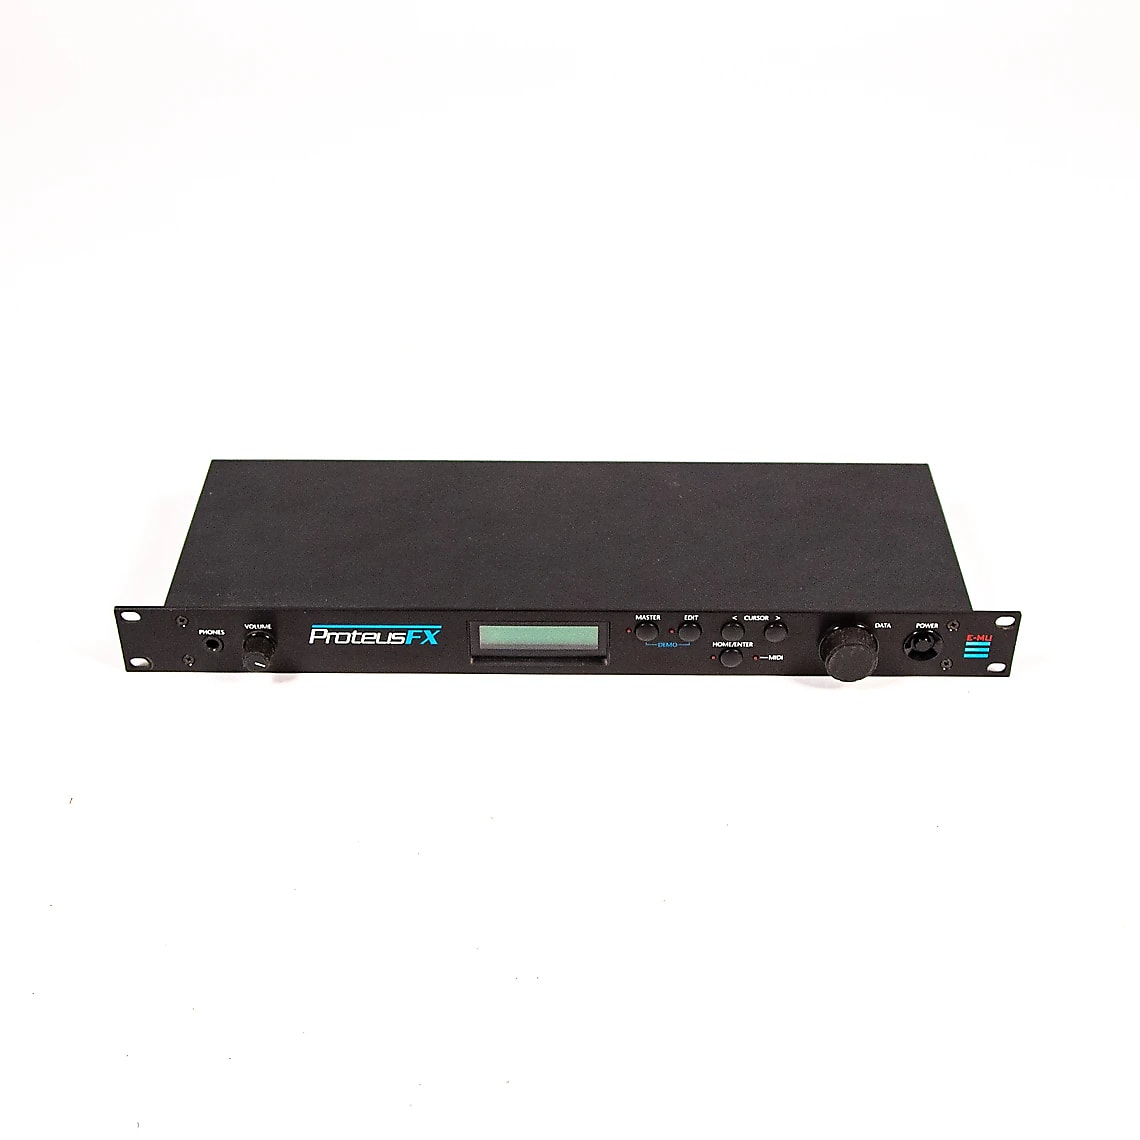 E-MU Systems Proteus FX Rackmount 32-Voice Sampler Module 